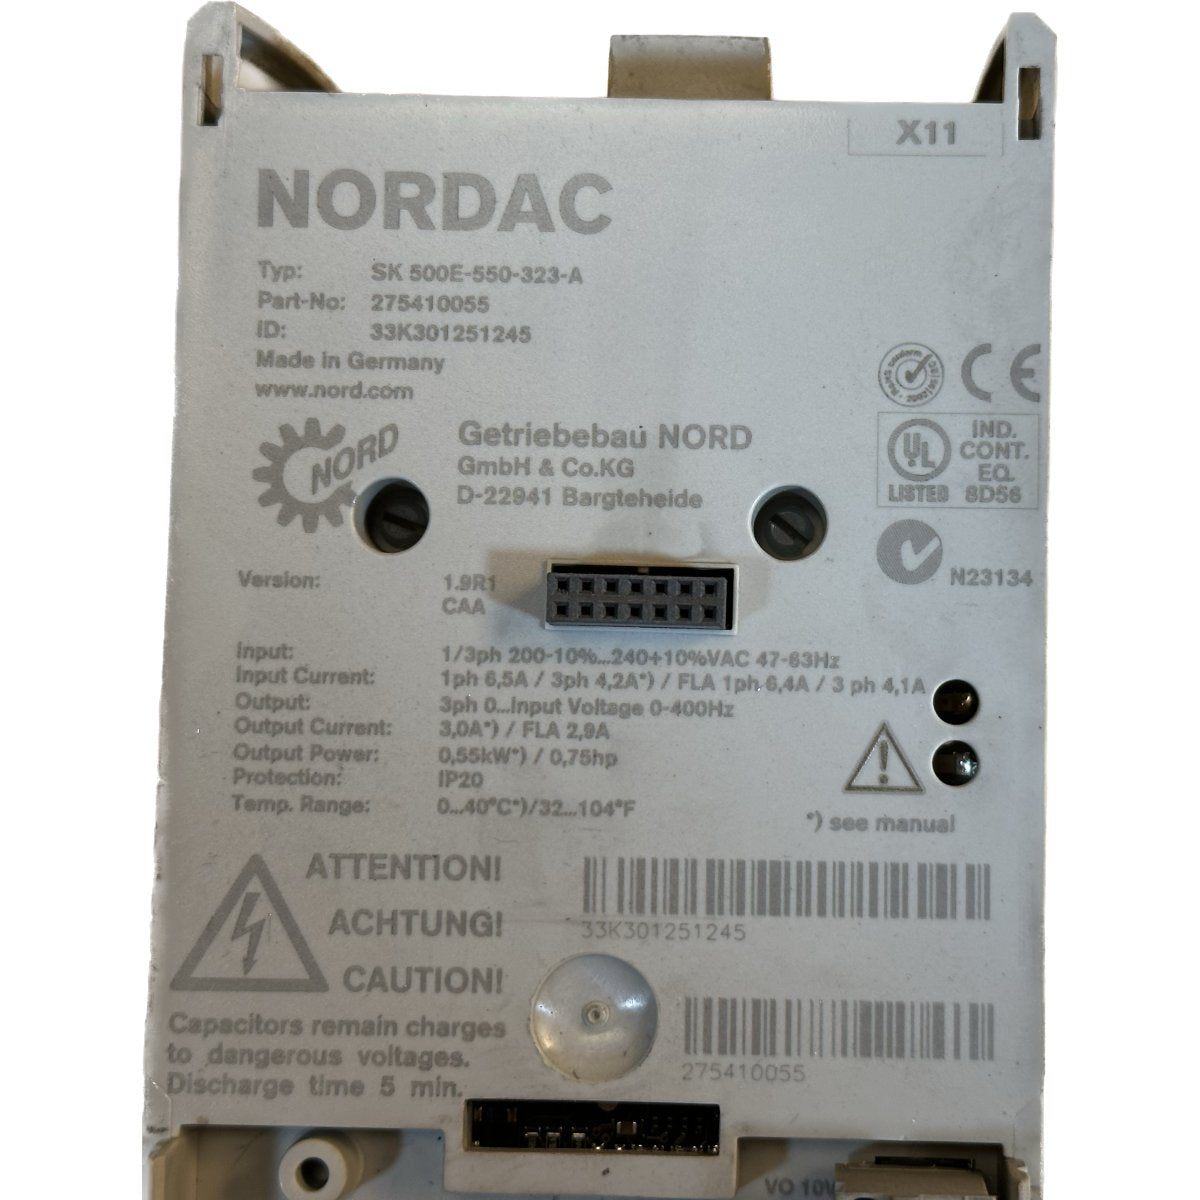 DJ195 Frequenzumrichter Nordac SK 500E-550-323-A